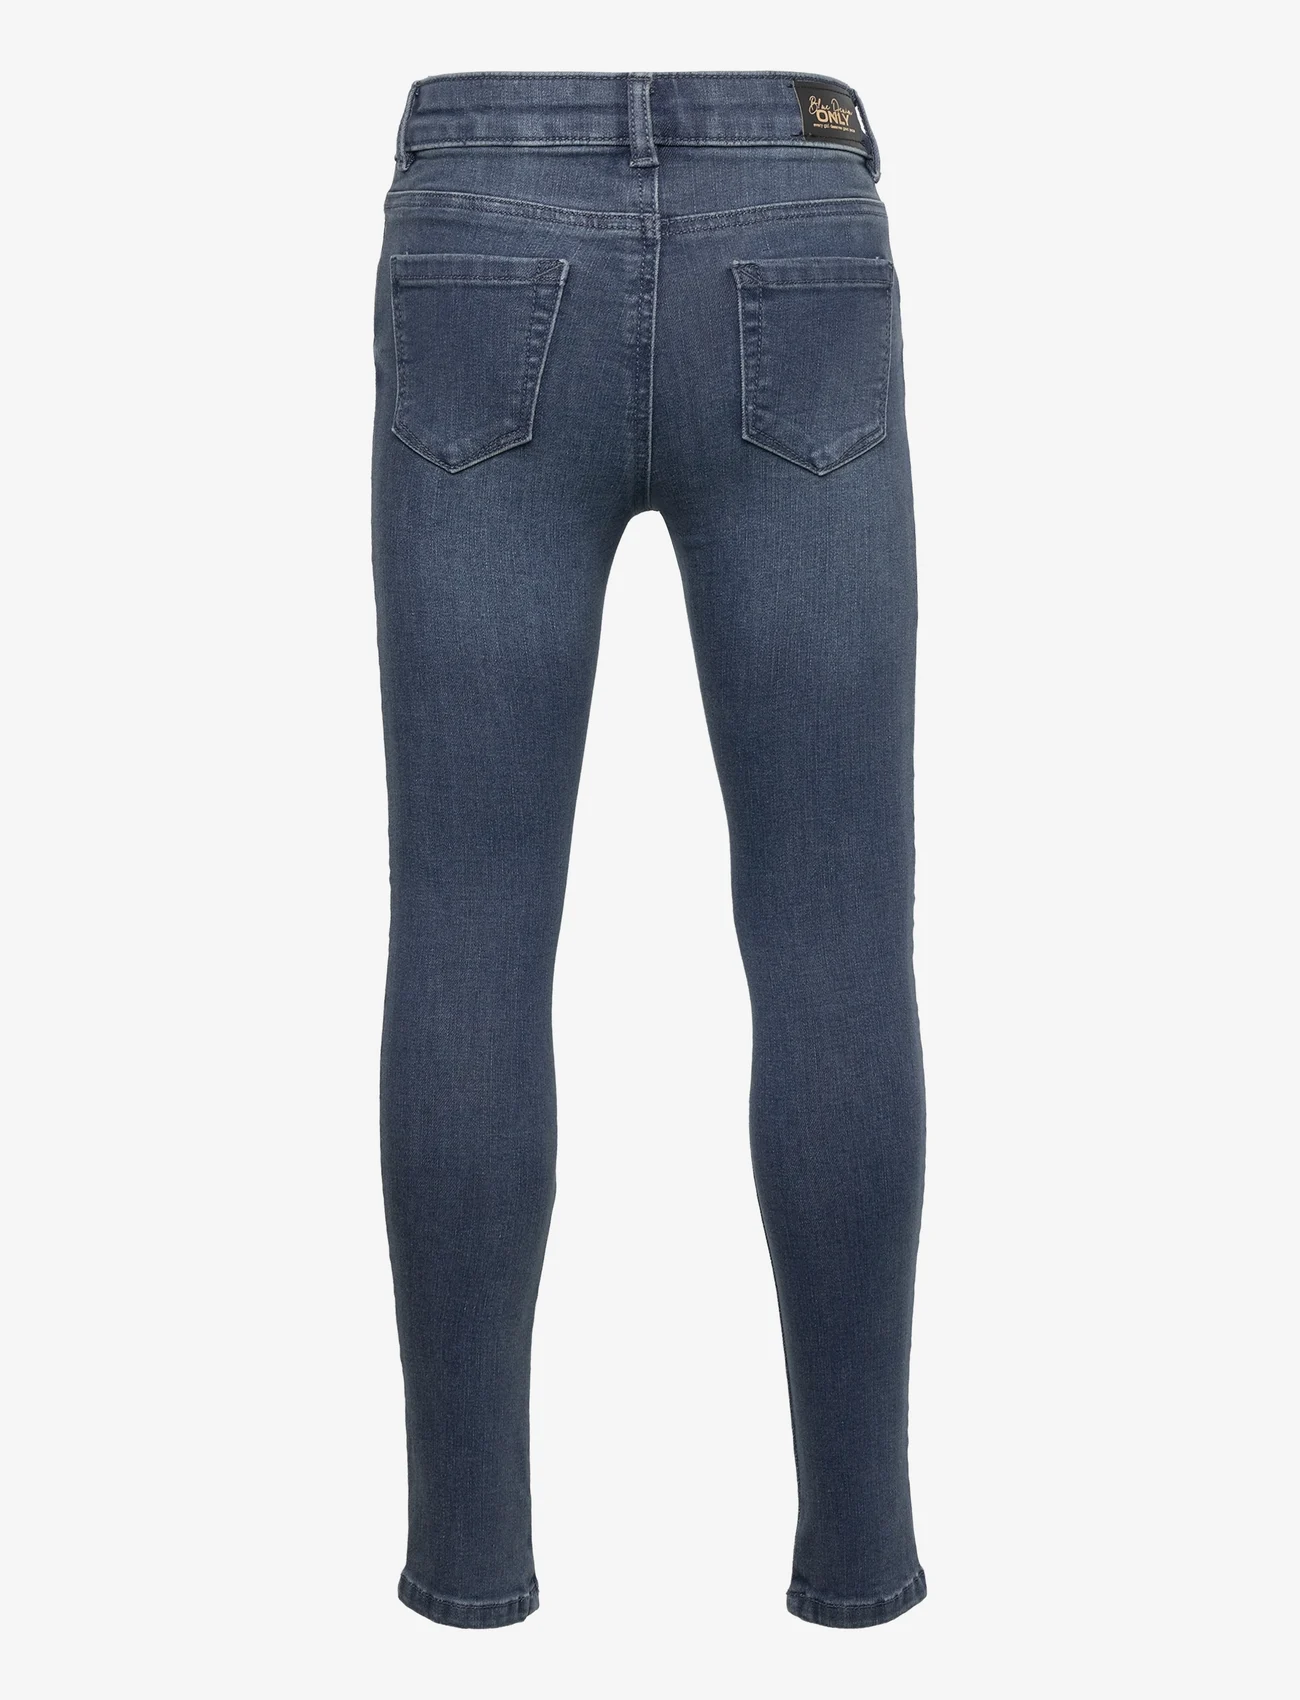 Kids Only - KOGRACHEL SKINNY DNM BJ521 - skinny jeans - blue black denim - 1